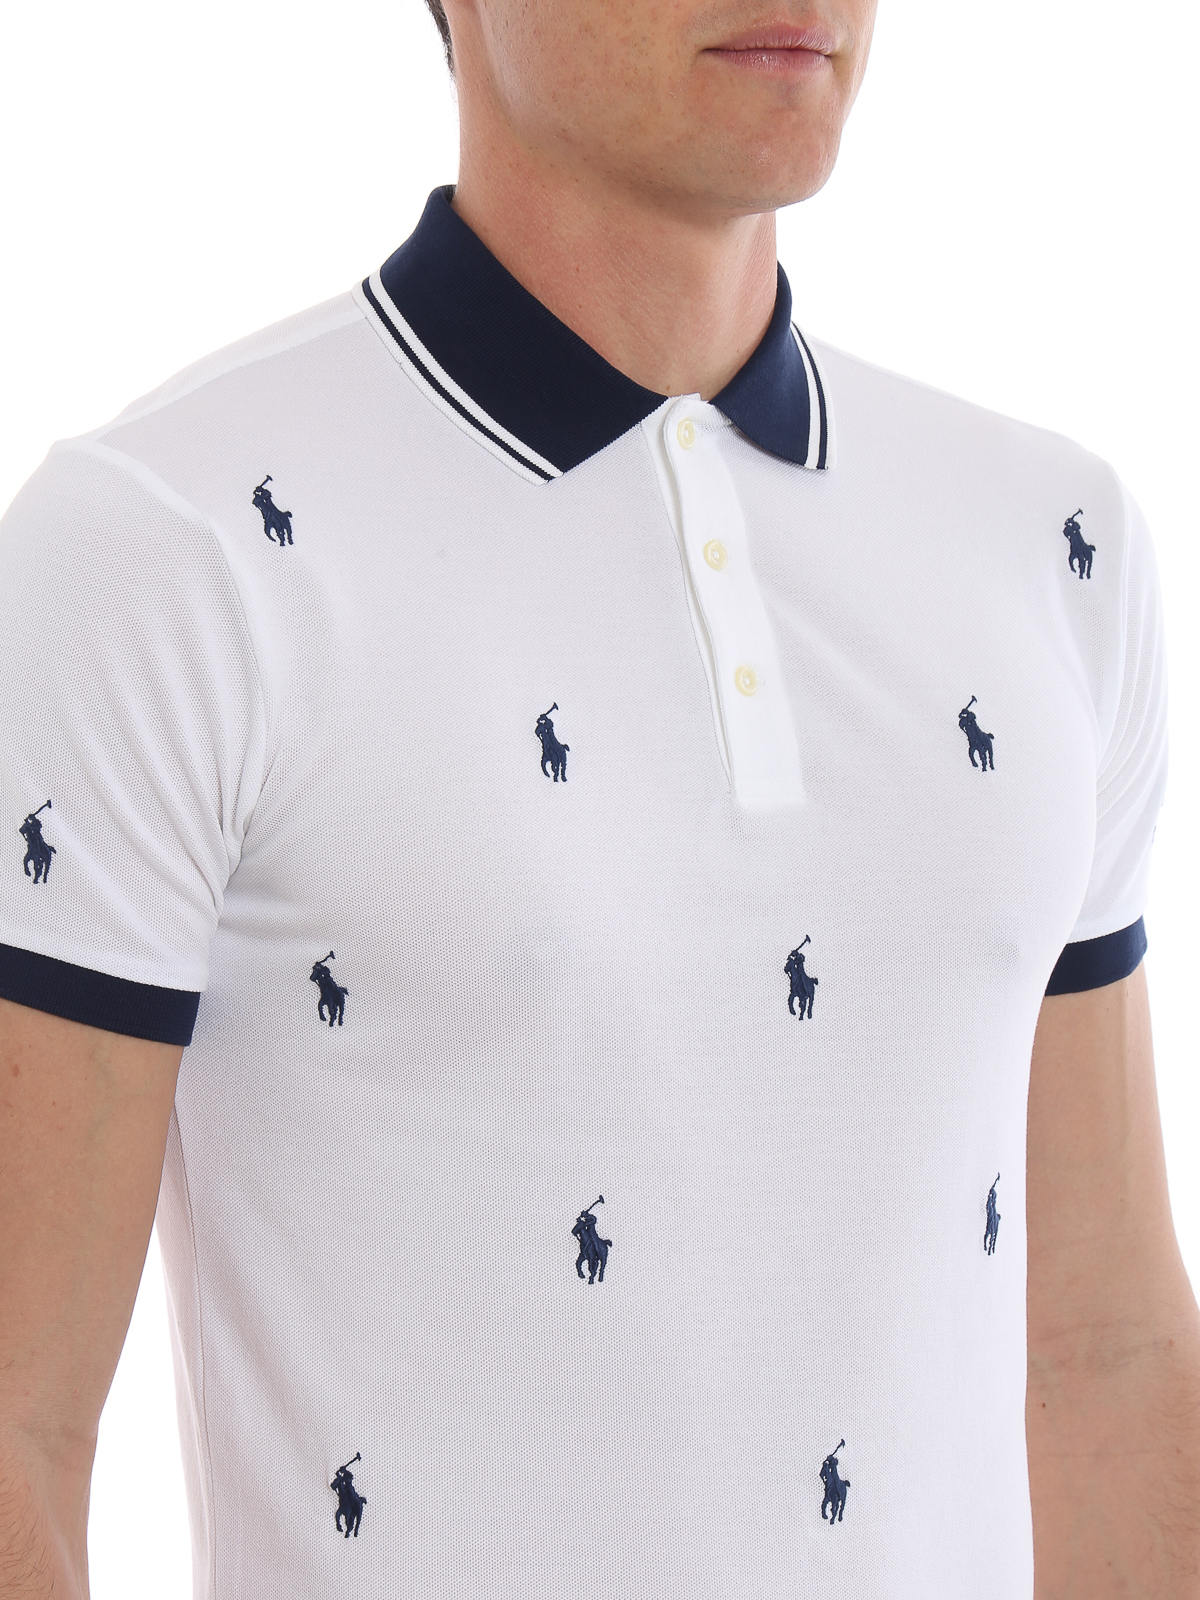 polo shirt with horse logo